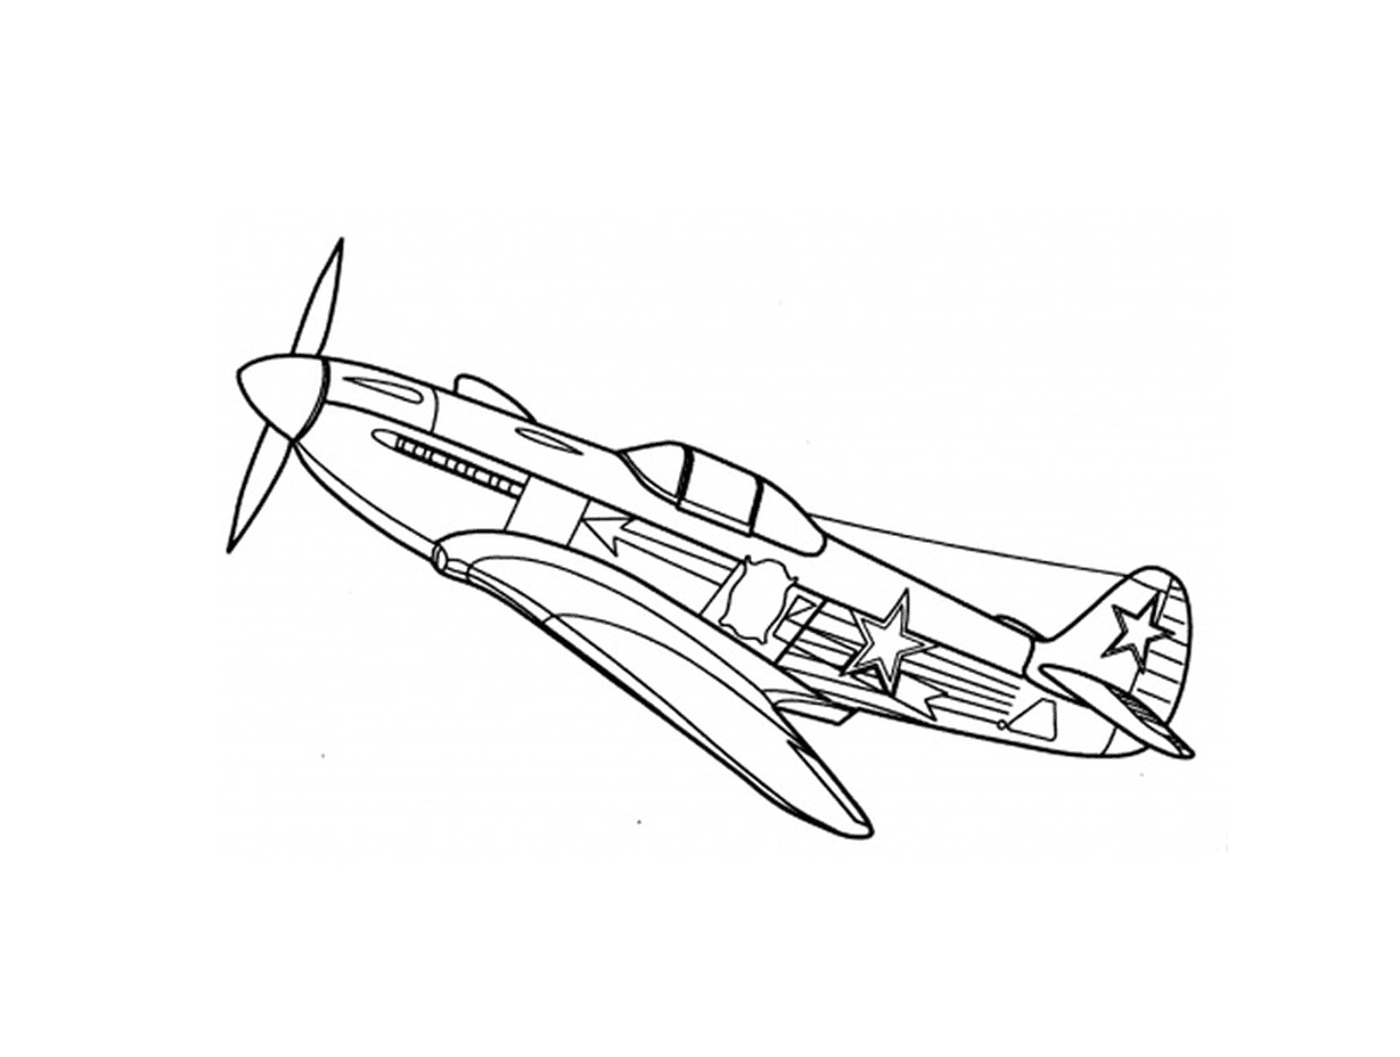  Um avião de guerra é desenhado 